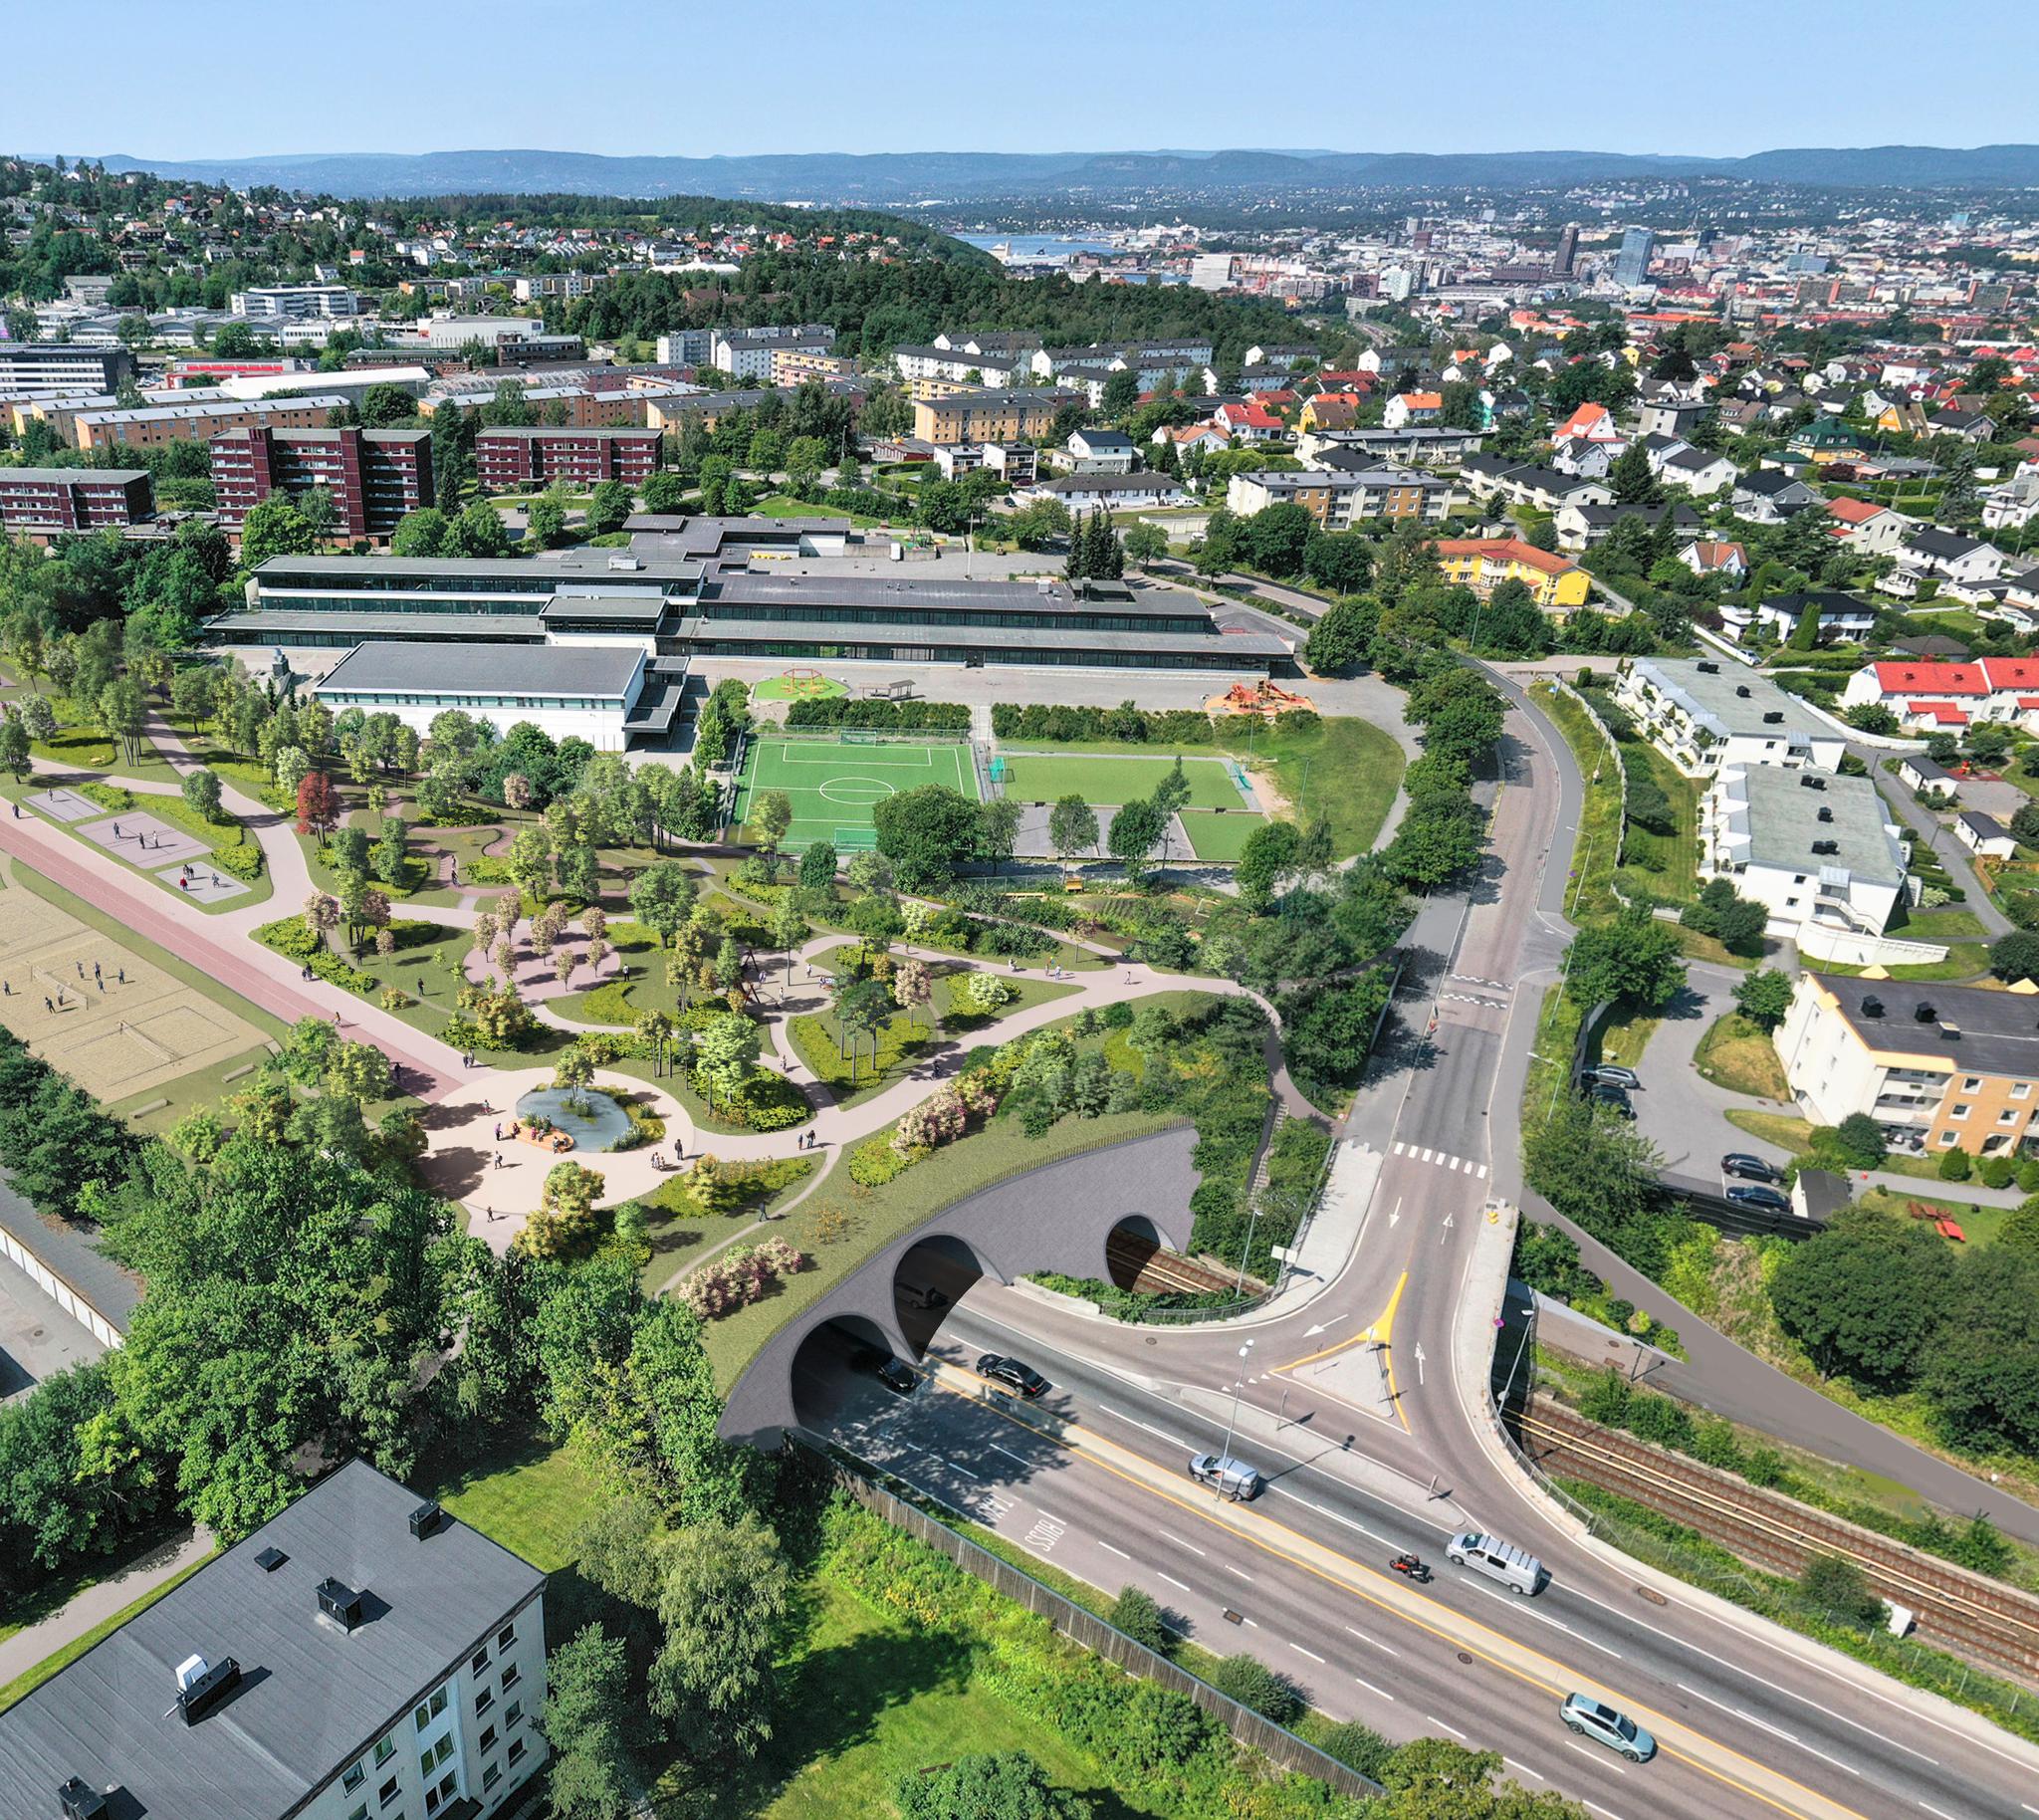 Et grønt lokk på Manglerud kan bli en pådriver for natur- og klimavennlig byutvikling i Oslo, skriver Lombardo. Bildet er en illustrasjon.